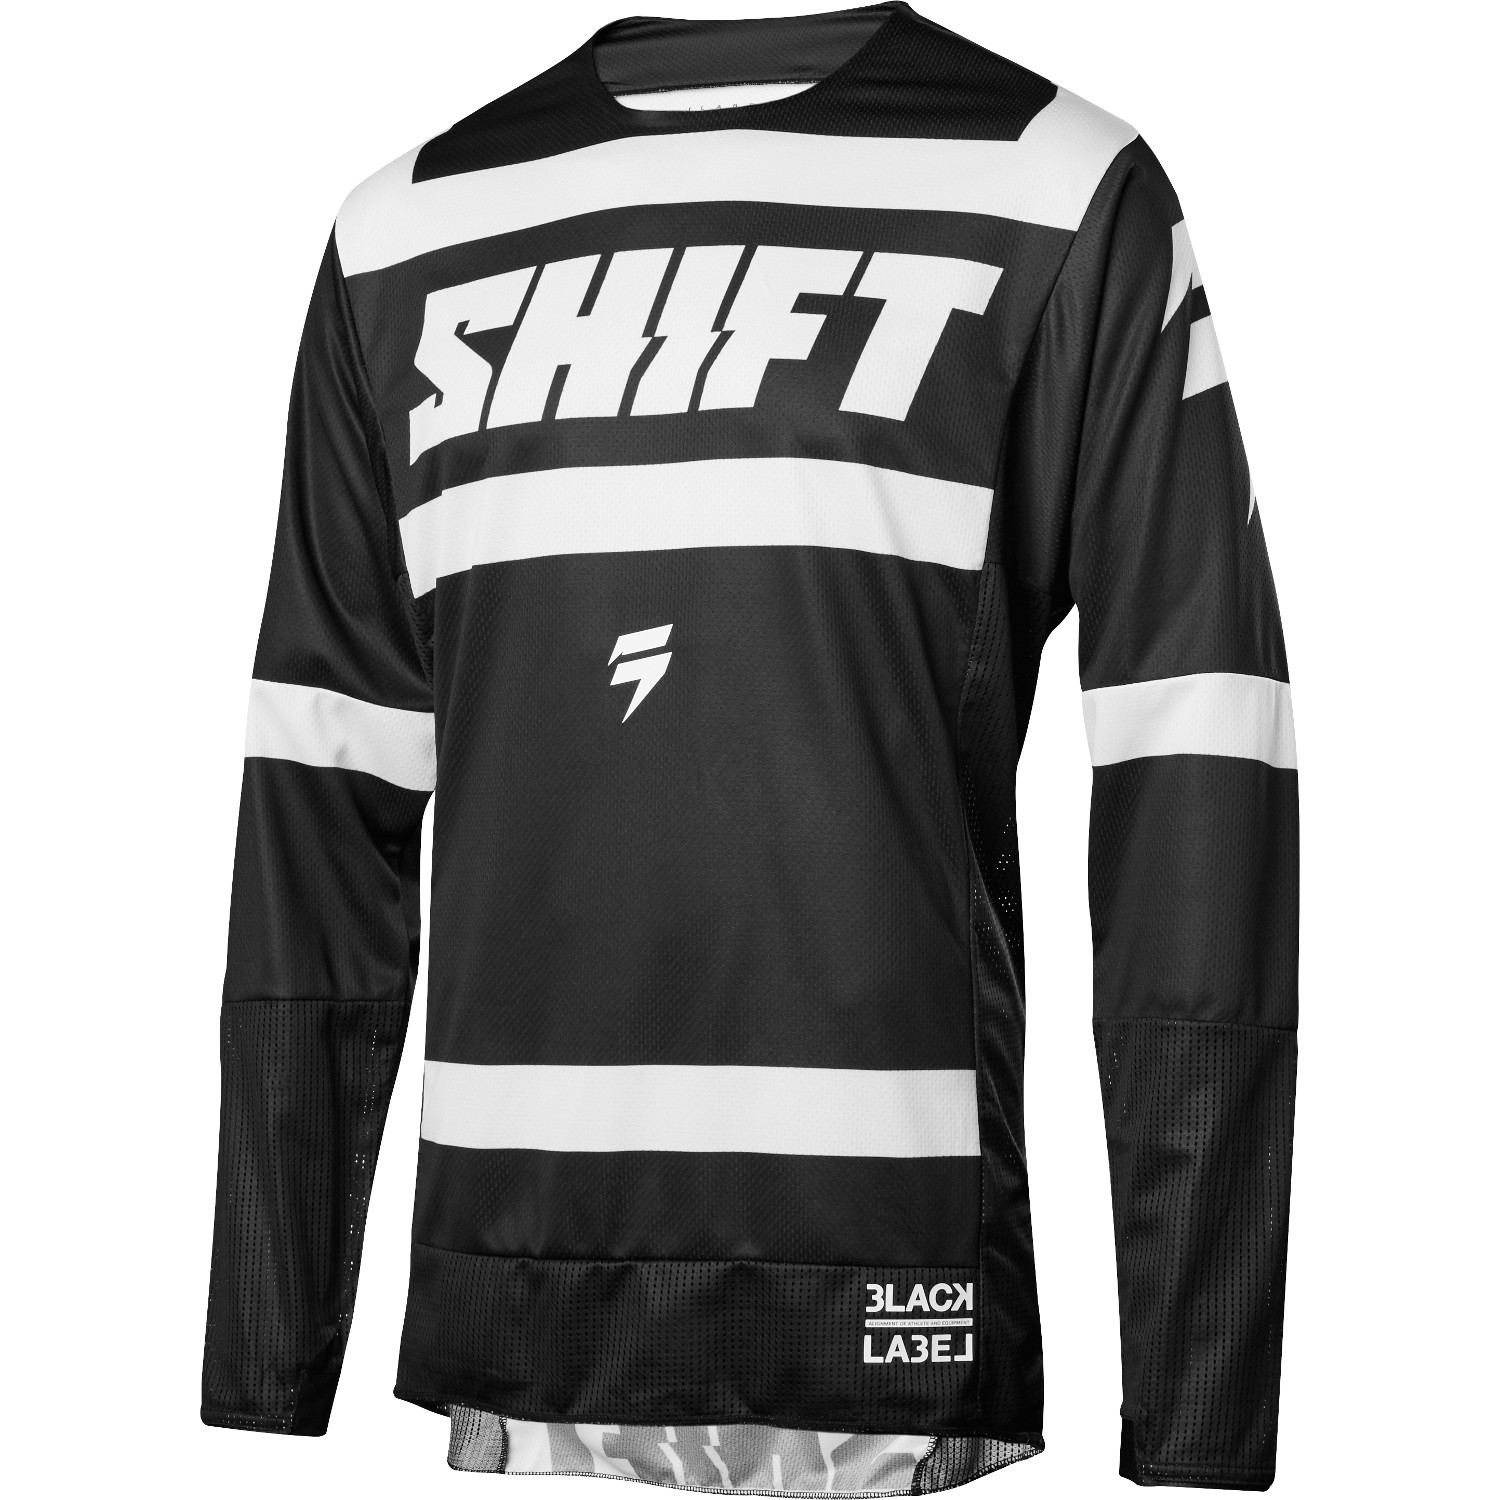 Shift Maillot MX 3lack Label Strike - Black/White